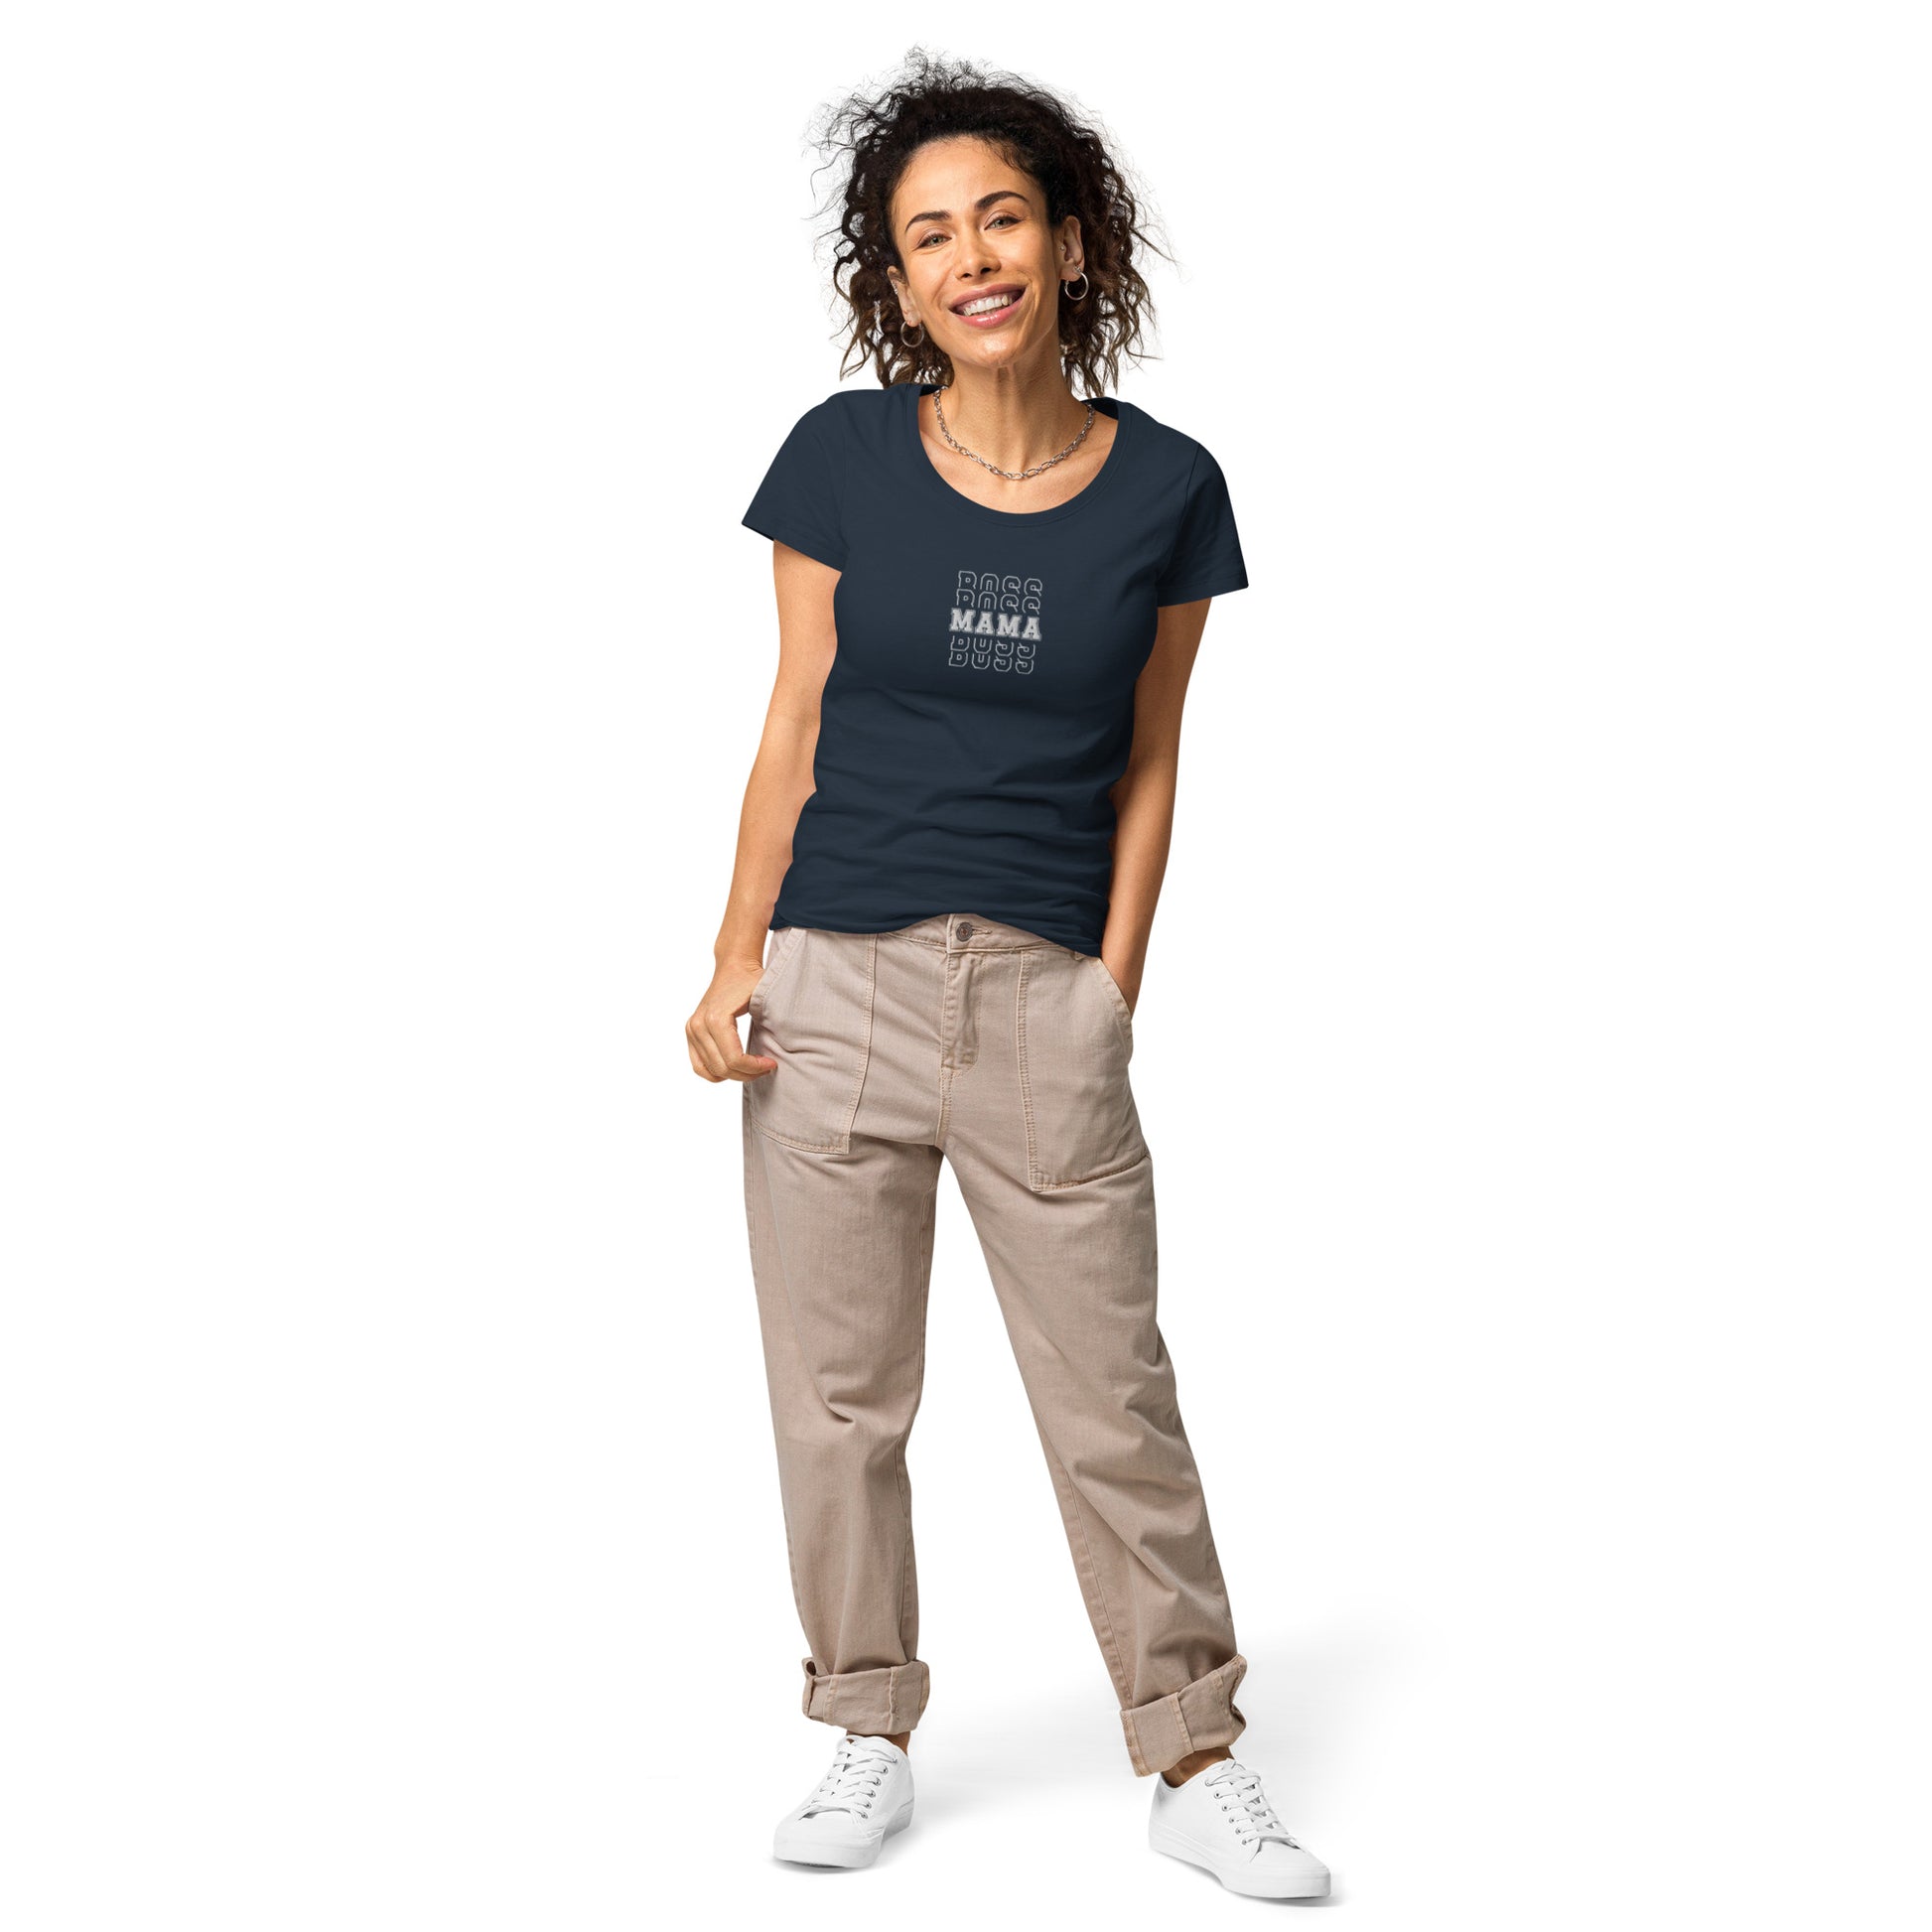 Boss Mama Women’s basic organic t-shirt - French navy / S -